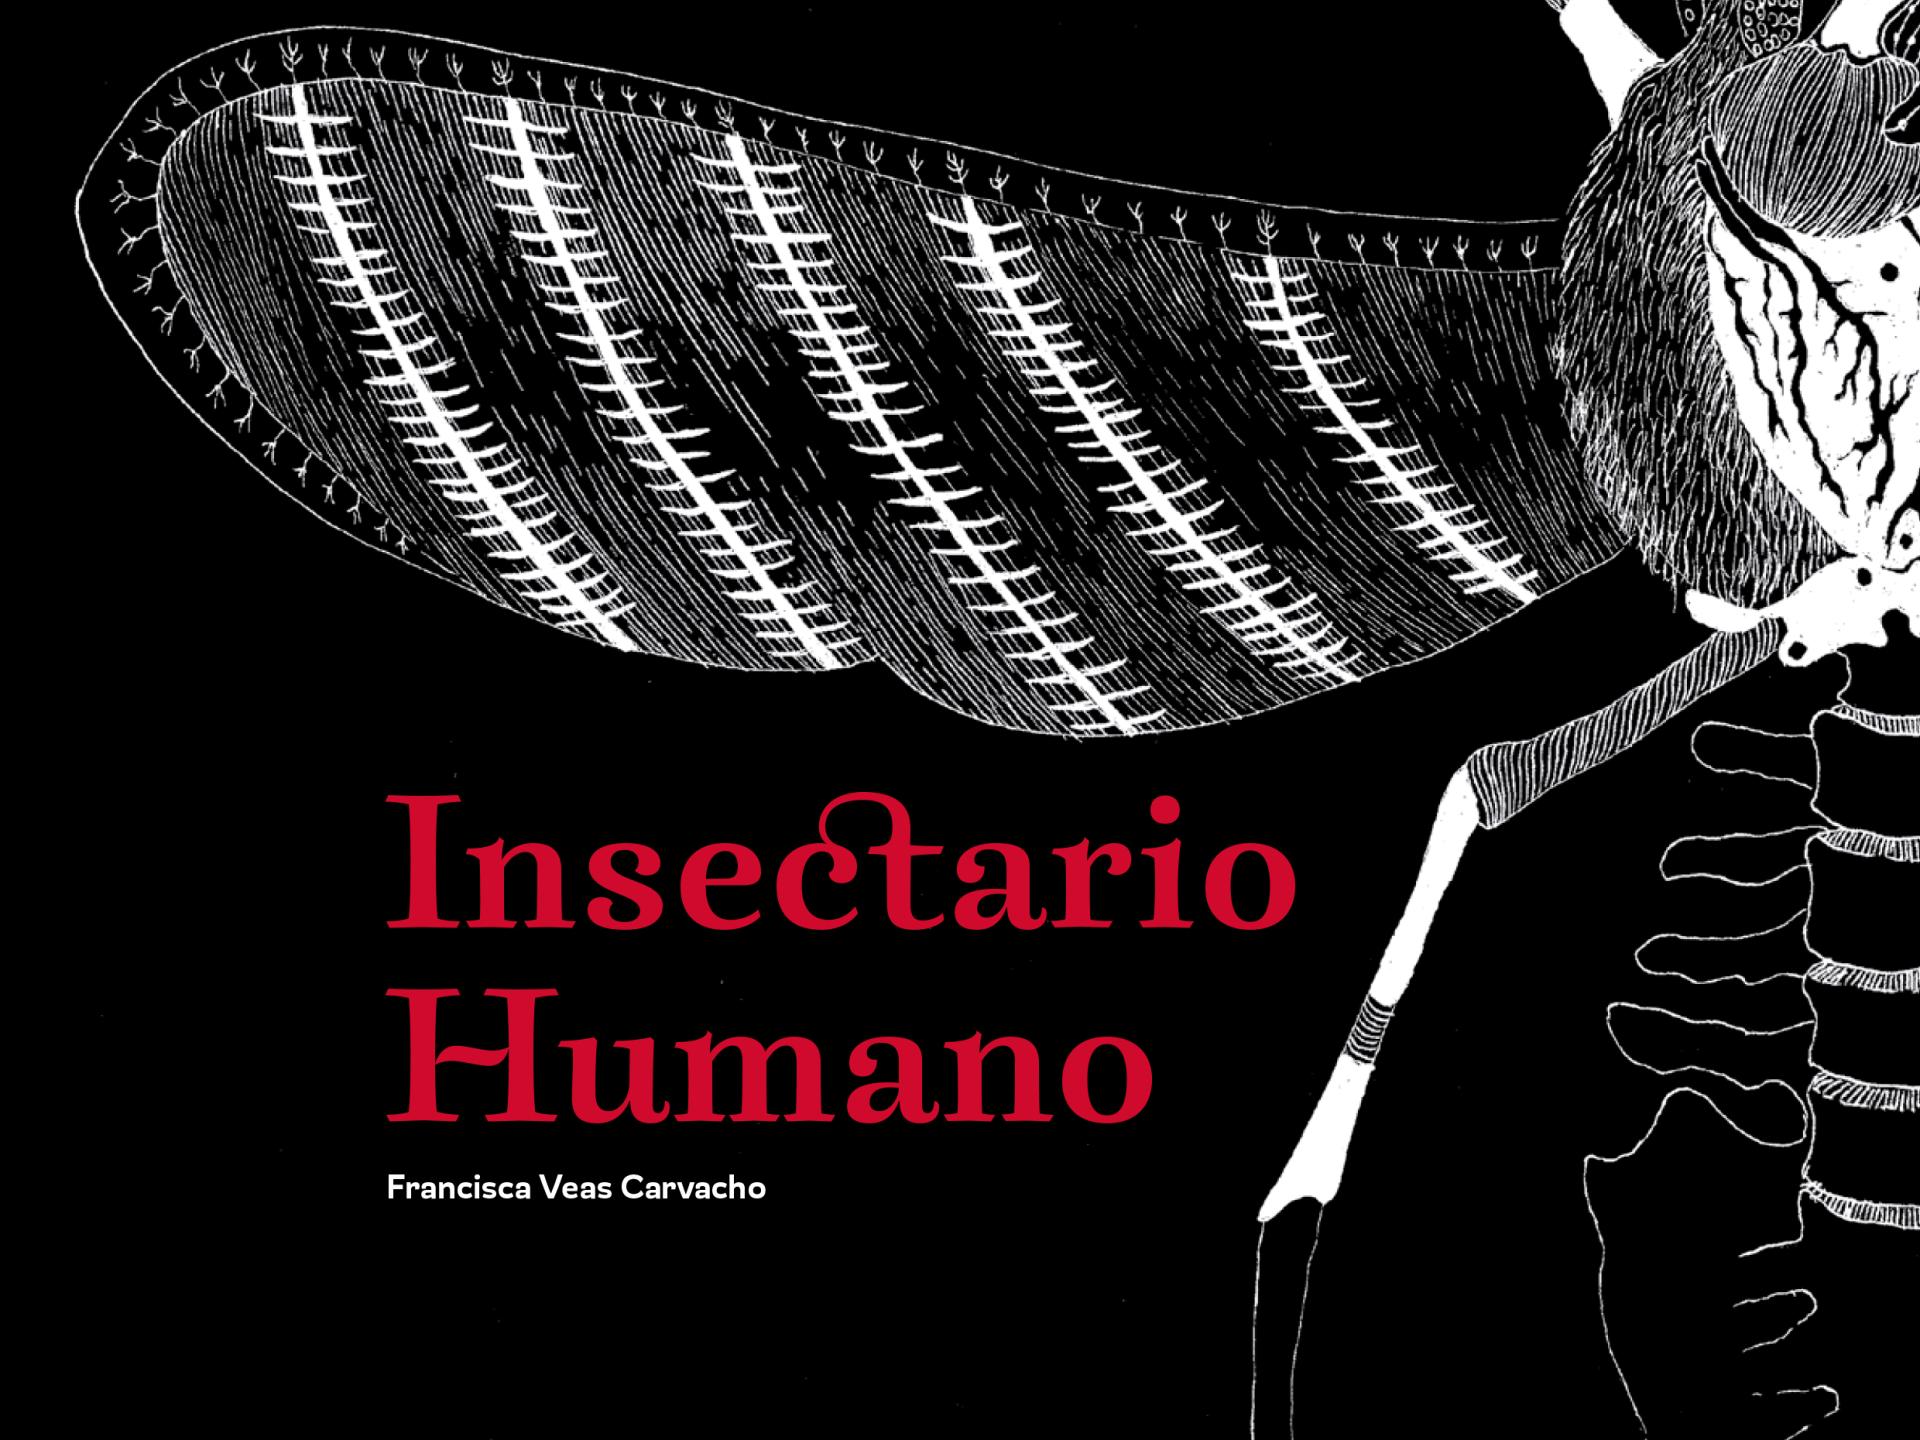 Libro de ilustraciones insectario humano de Francisca Veas